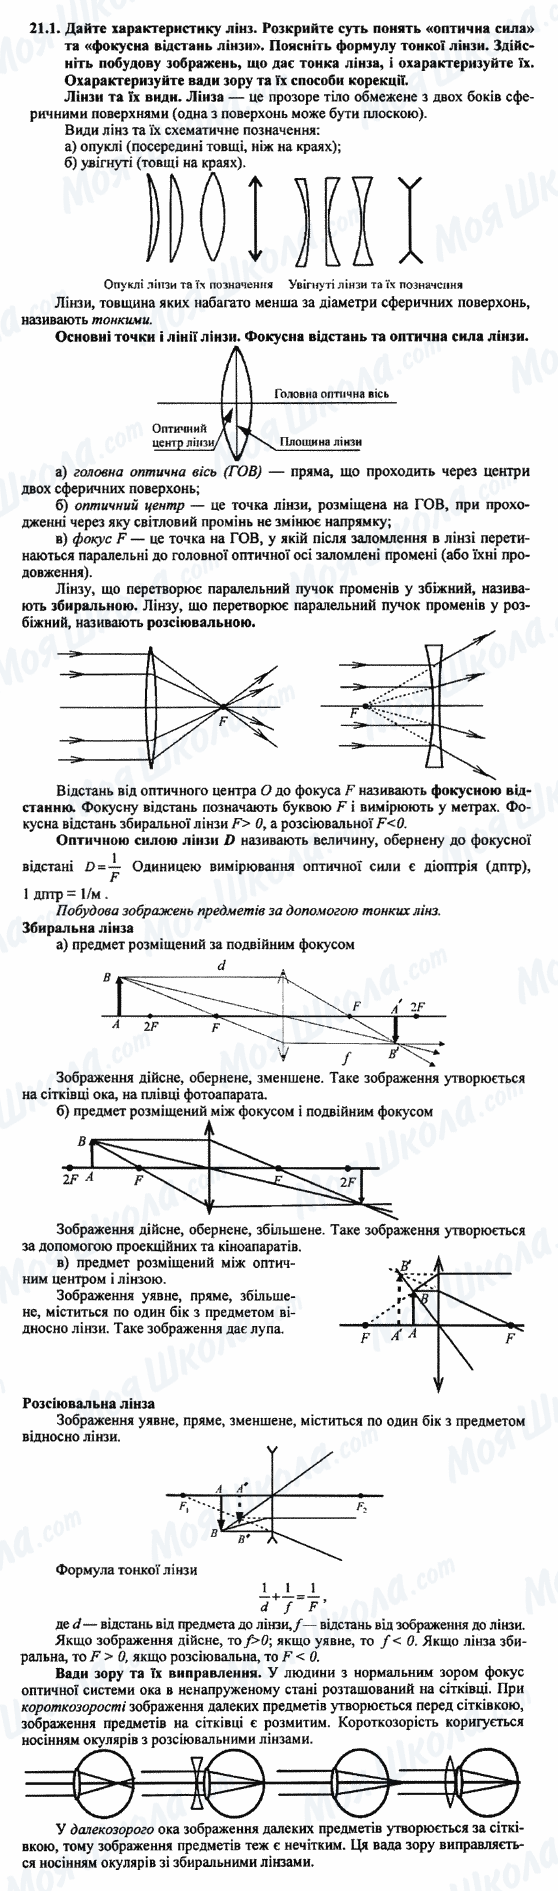 ДПА Физика 9 класс страница 21.1